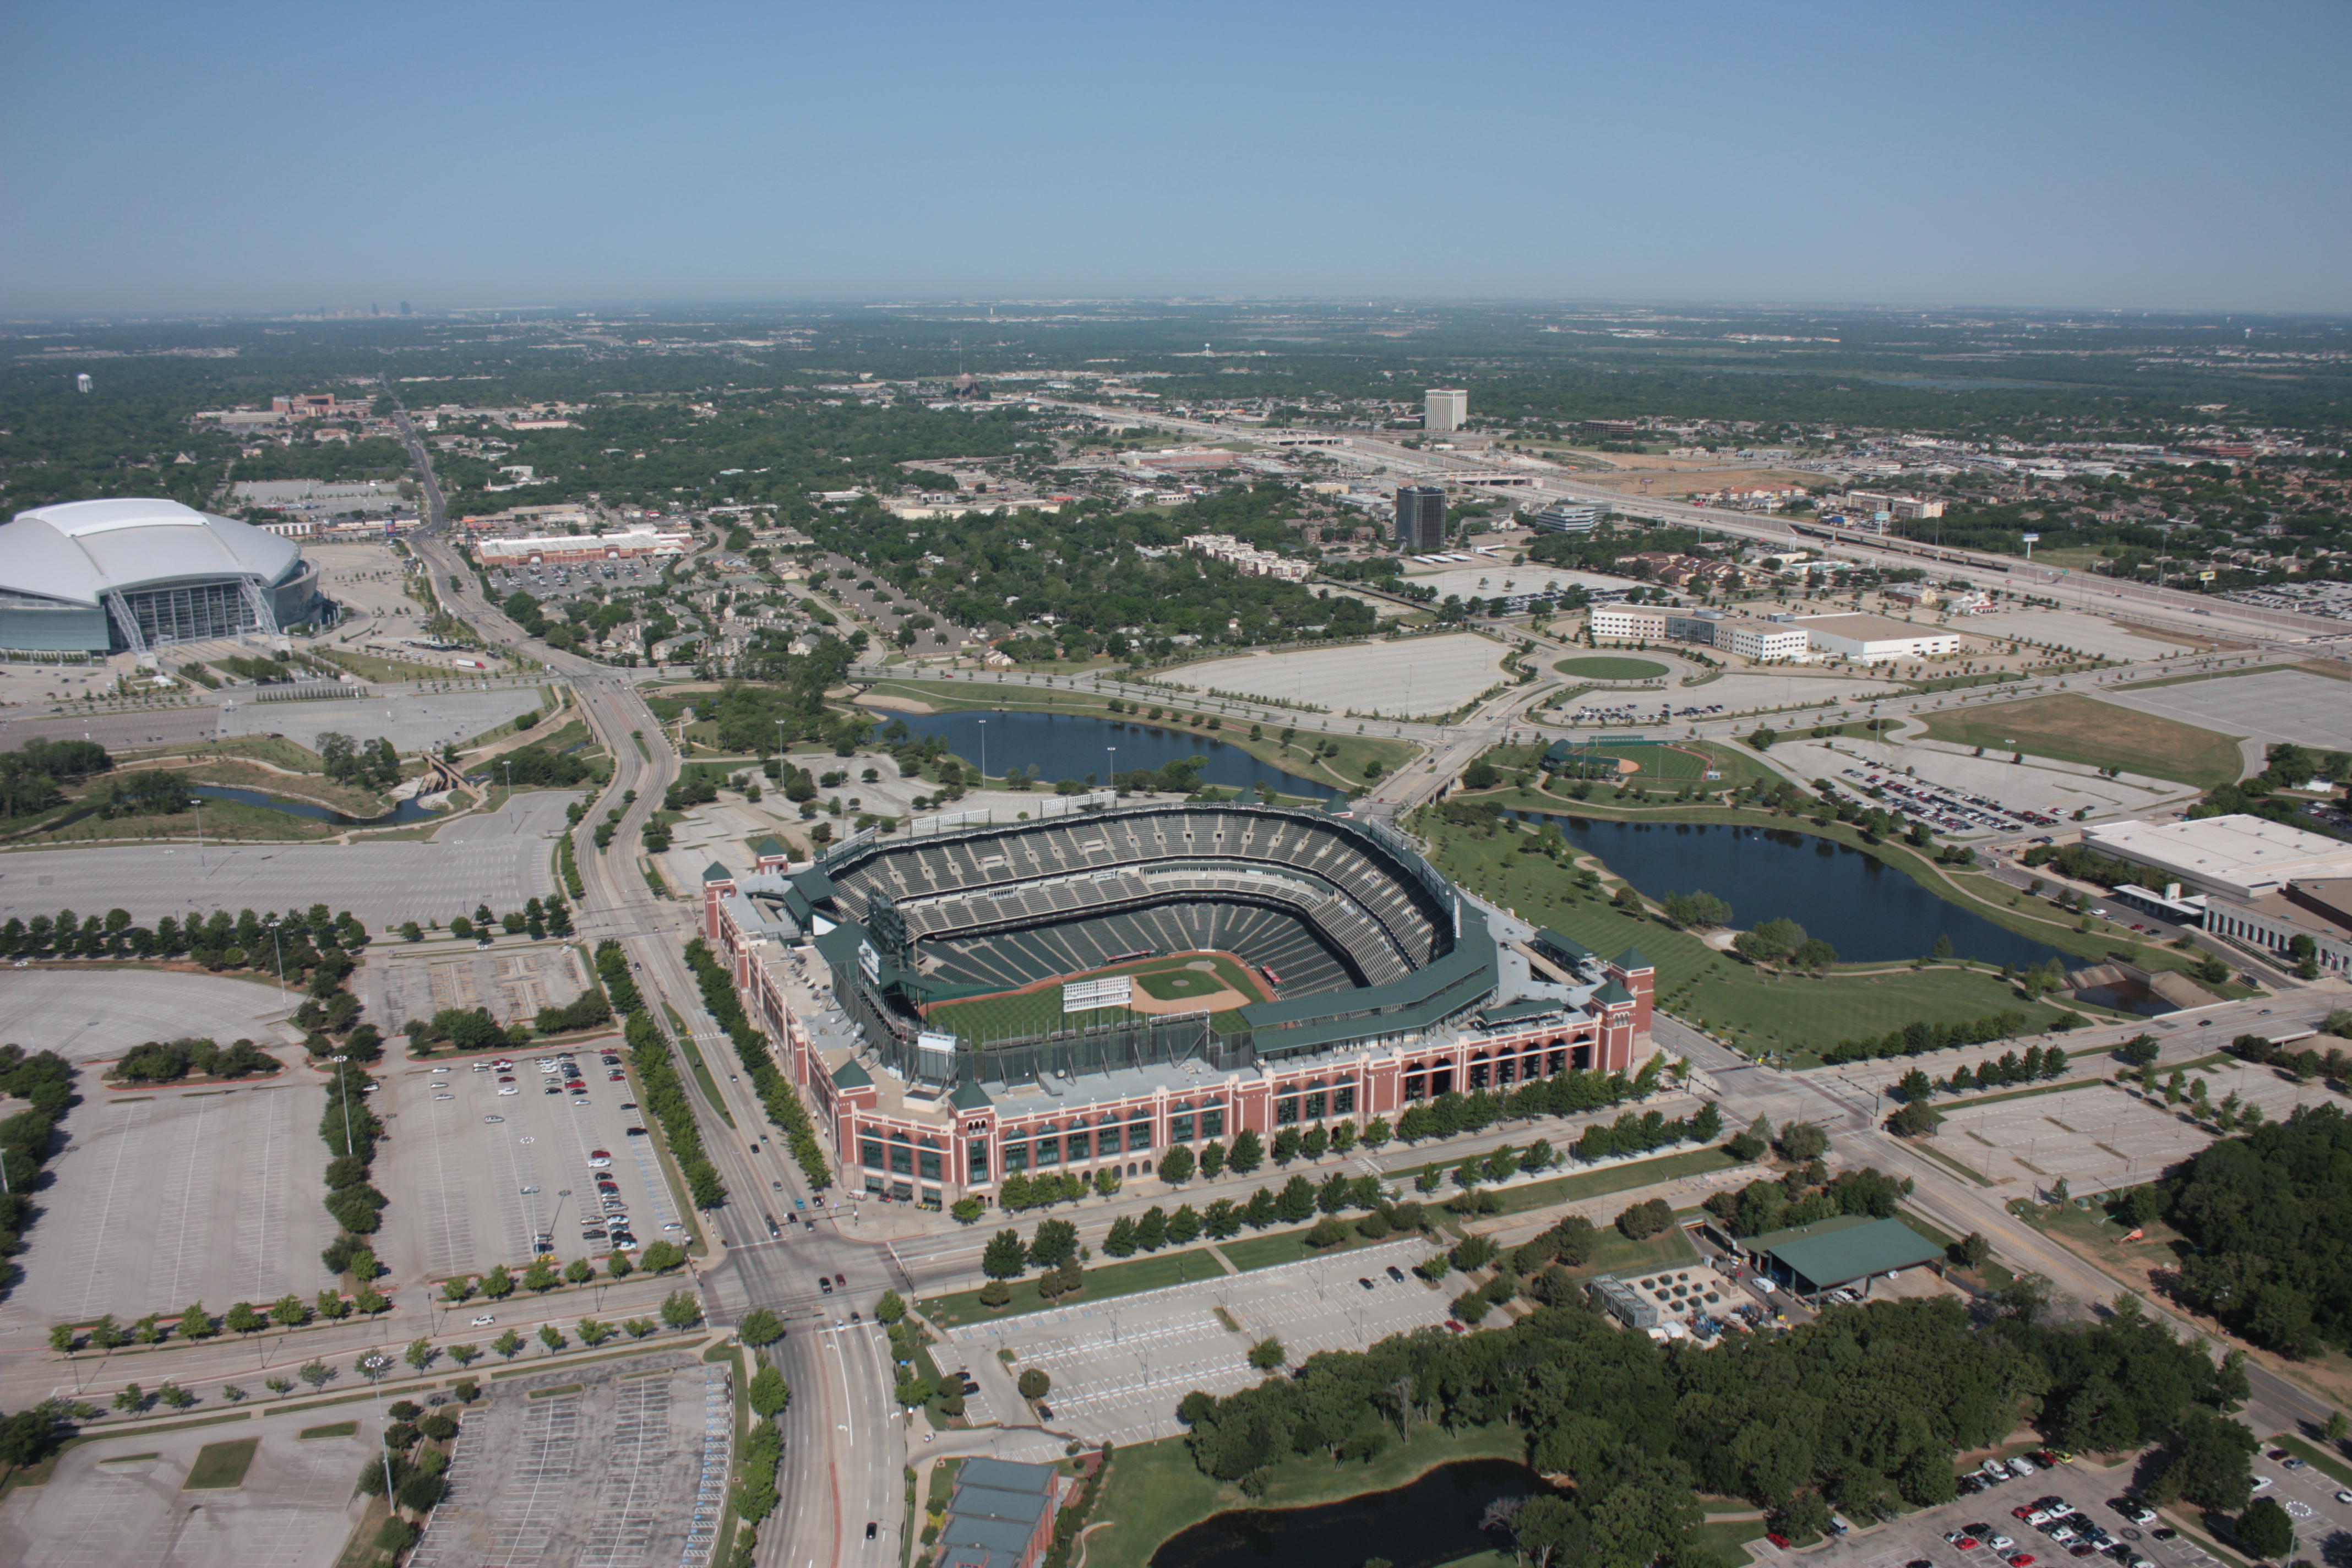 Arlington Stadiums aerial views